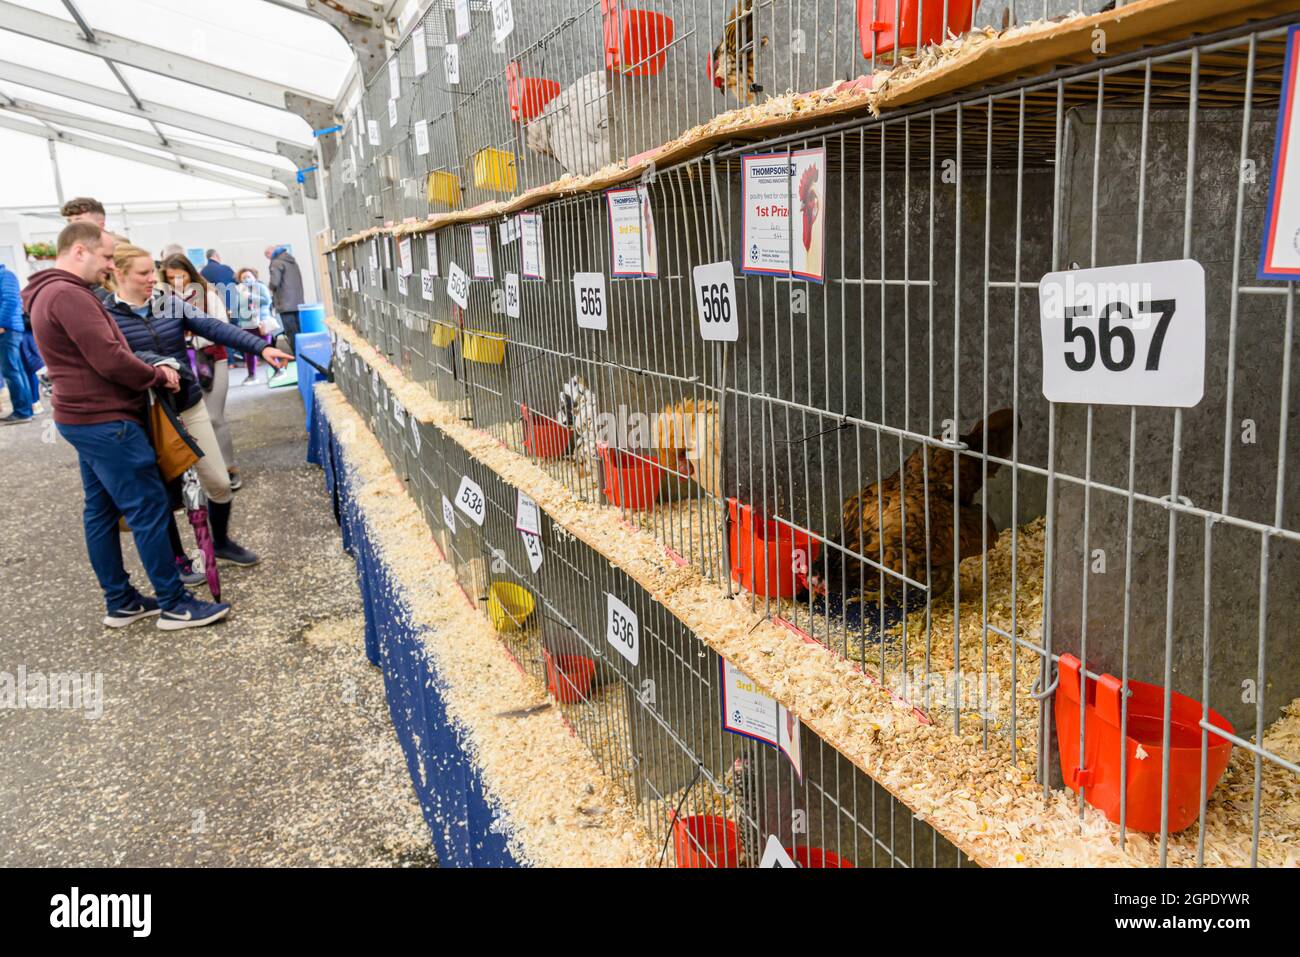 Poulets en cage exposés dans la zone avicole du Balmoral Show, Lisburn, Irlande du Nord, Royaume-Uni Banque D'Images